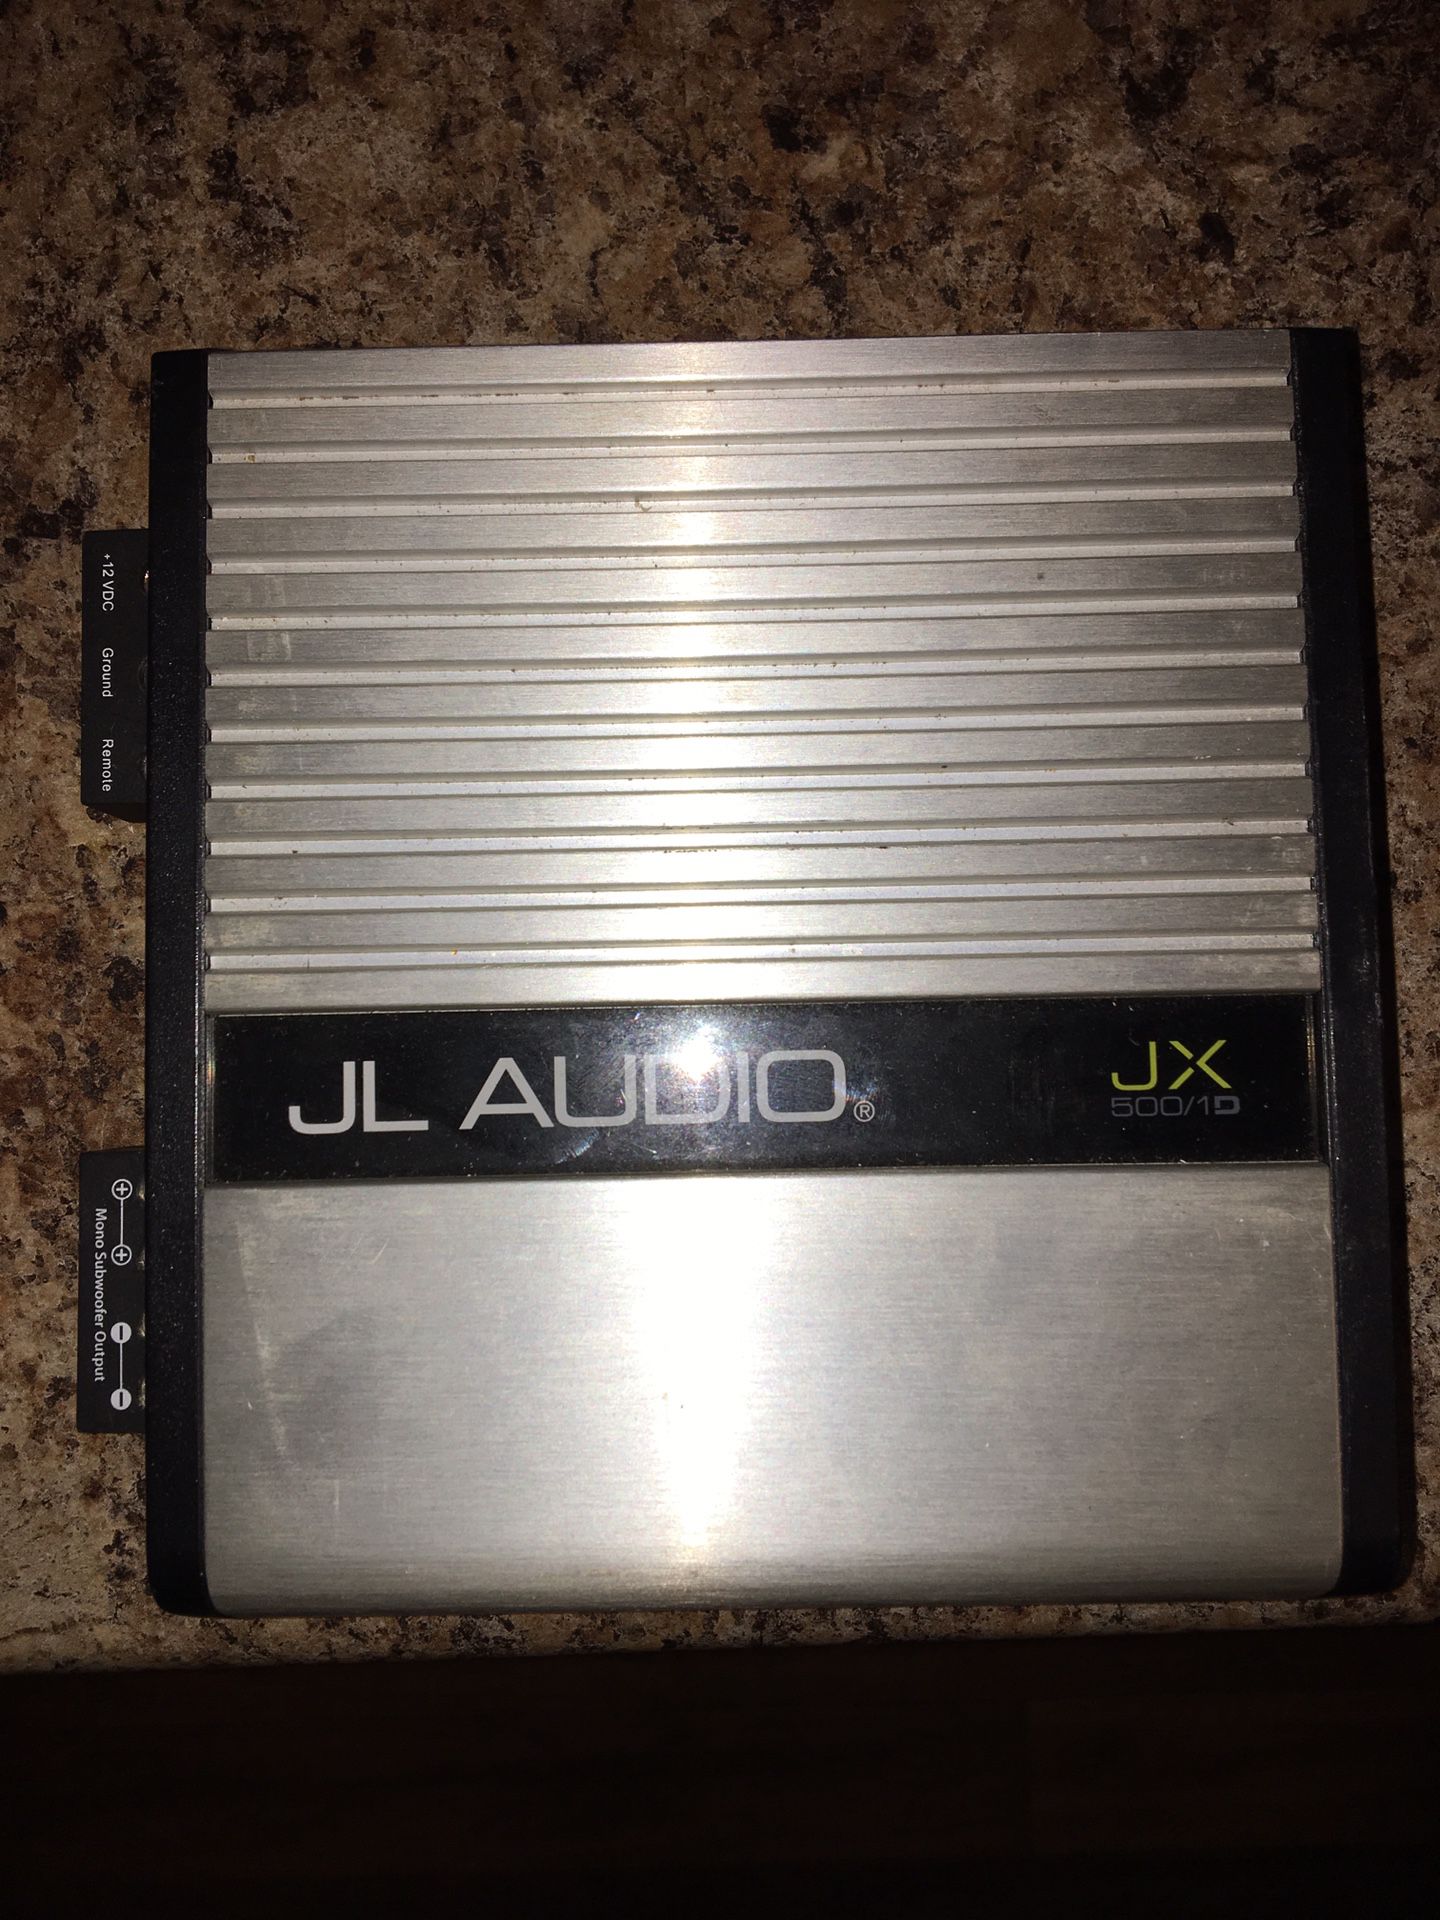 JL audio amp